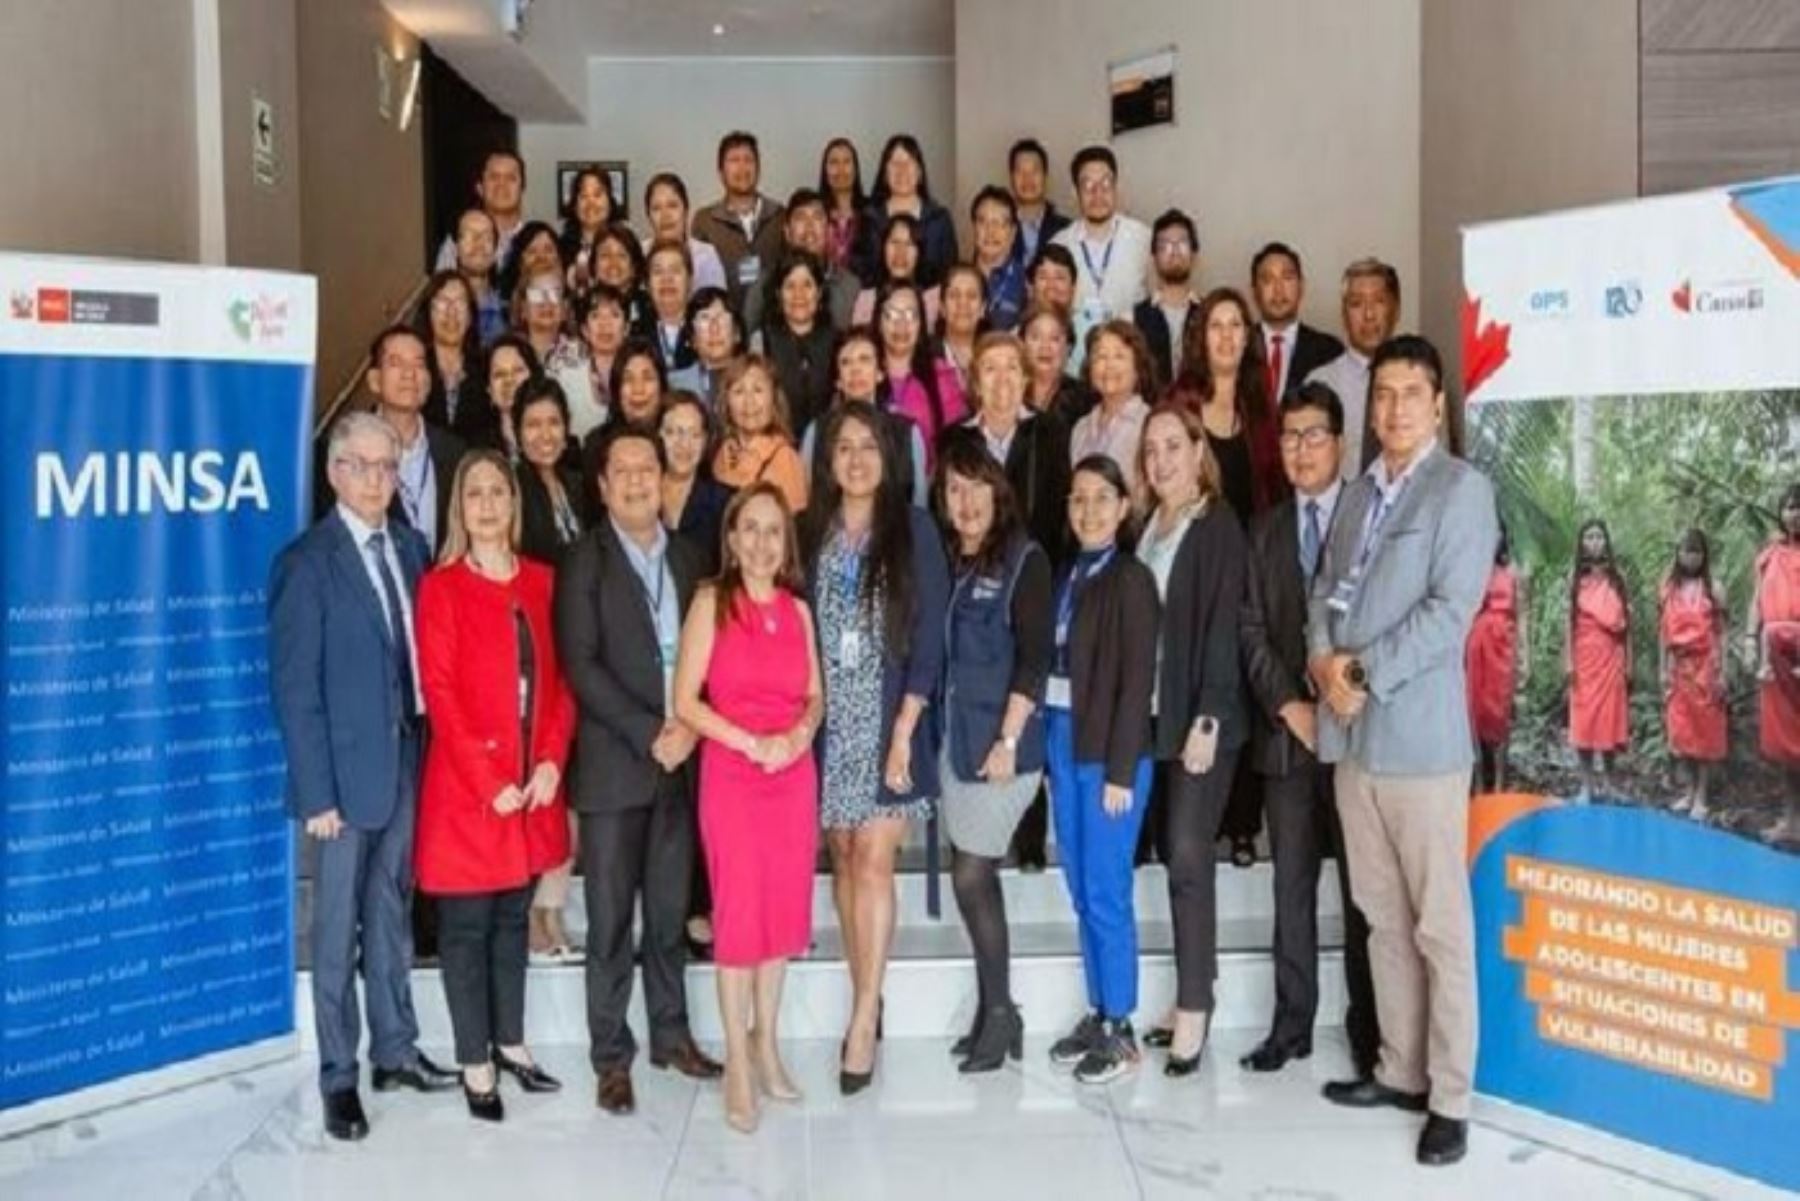 Se reunieron más de 50 profesionales de la salud de 21 regiones, quienes trataron aspectos de interculturalidad en salud, nosrmativas y políticas.